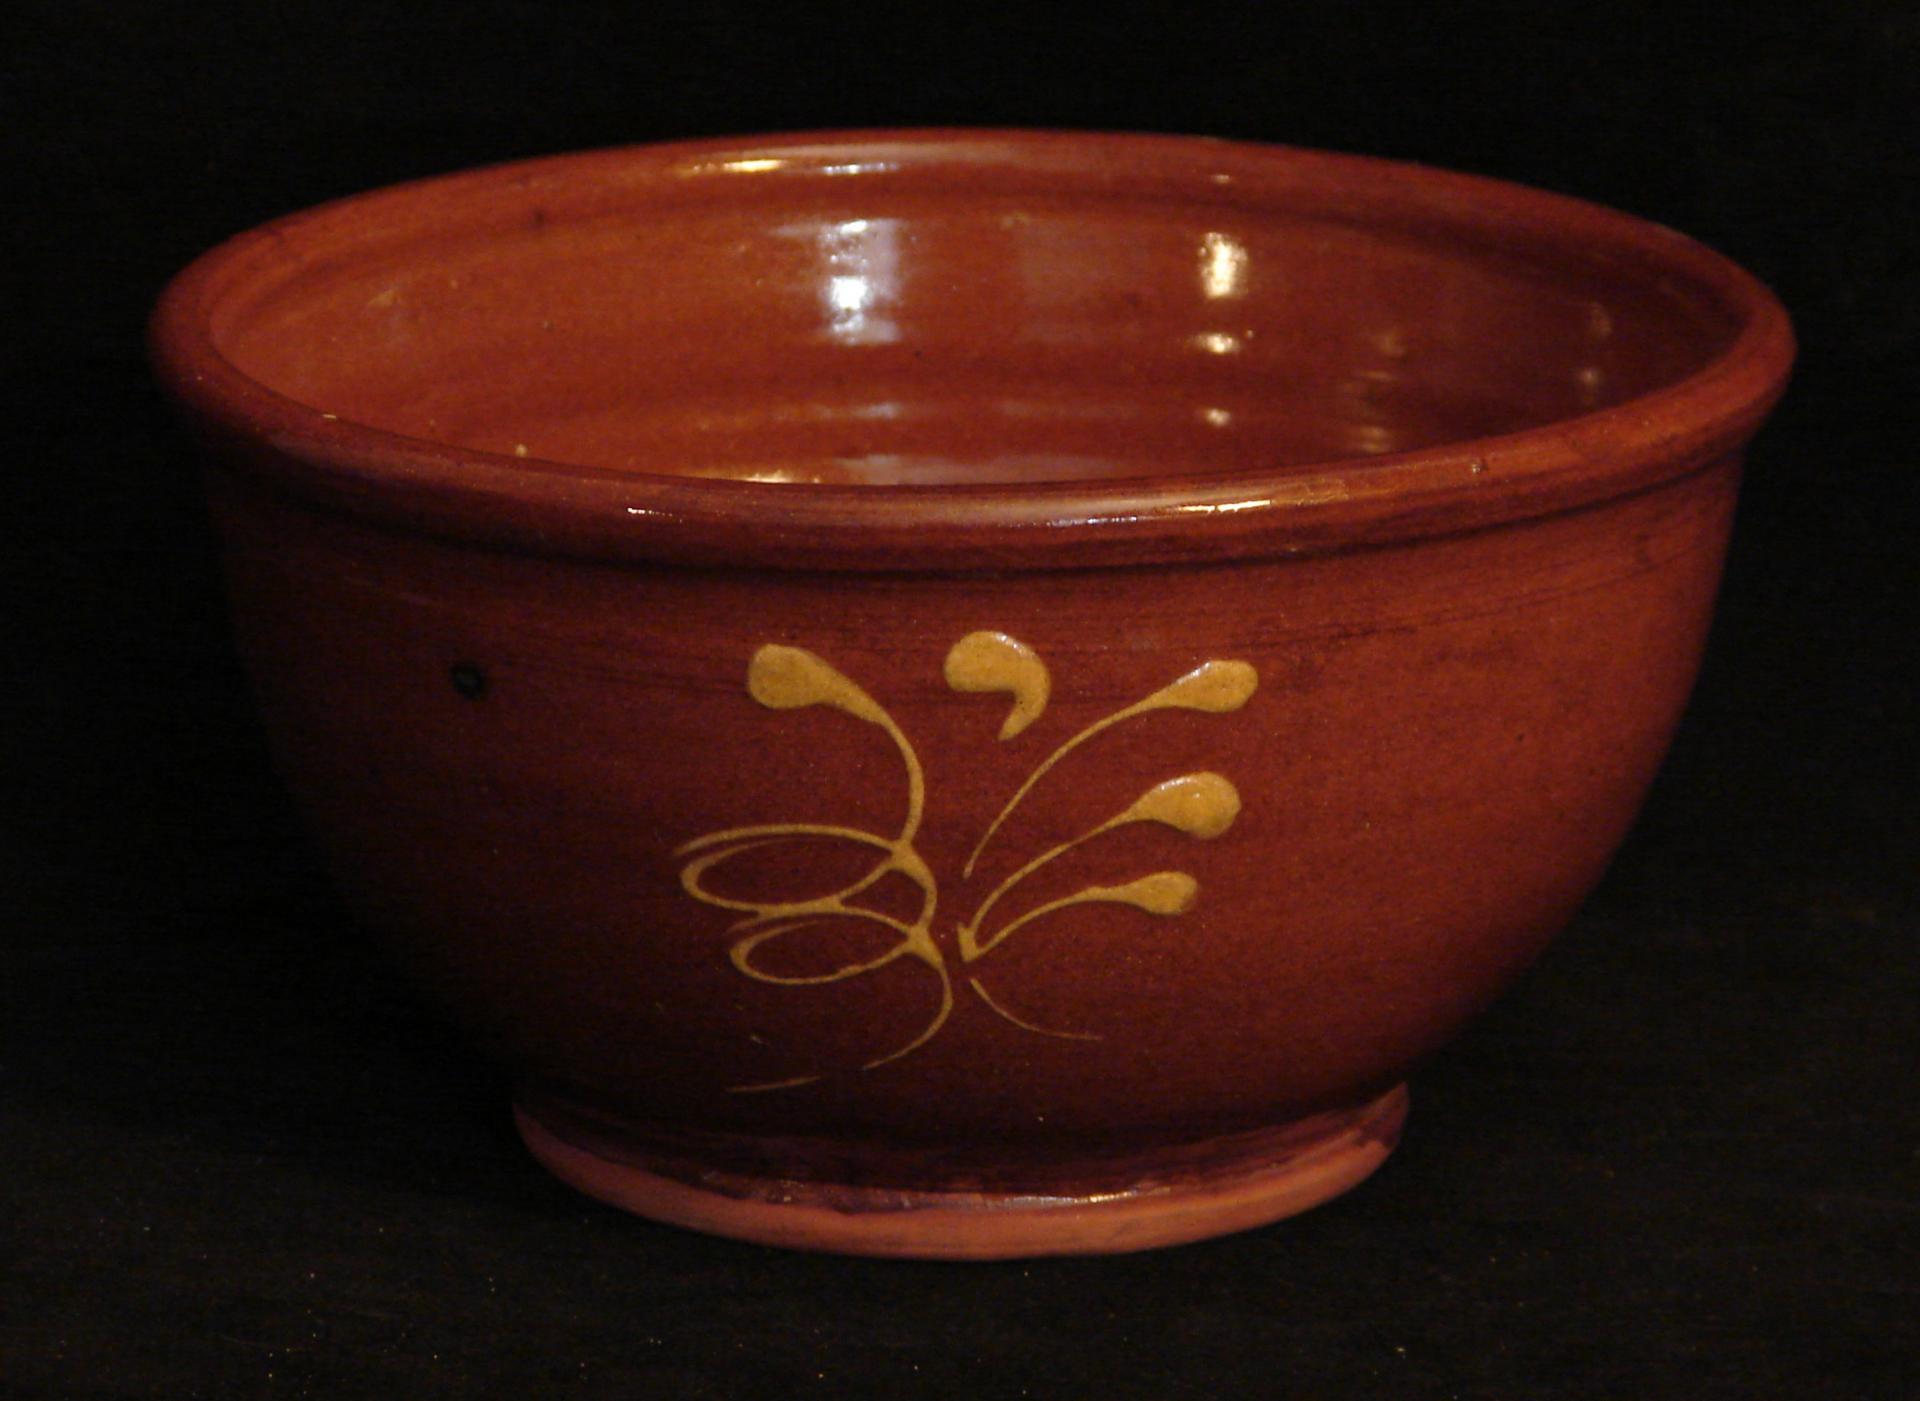 Custom Order Pied Potter Hamelin 10" Redware Bowl, Feather